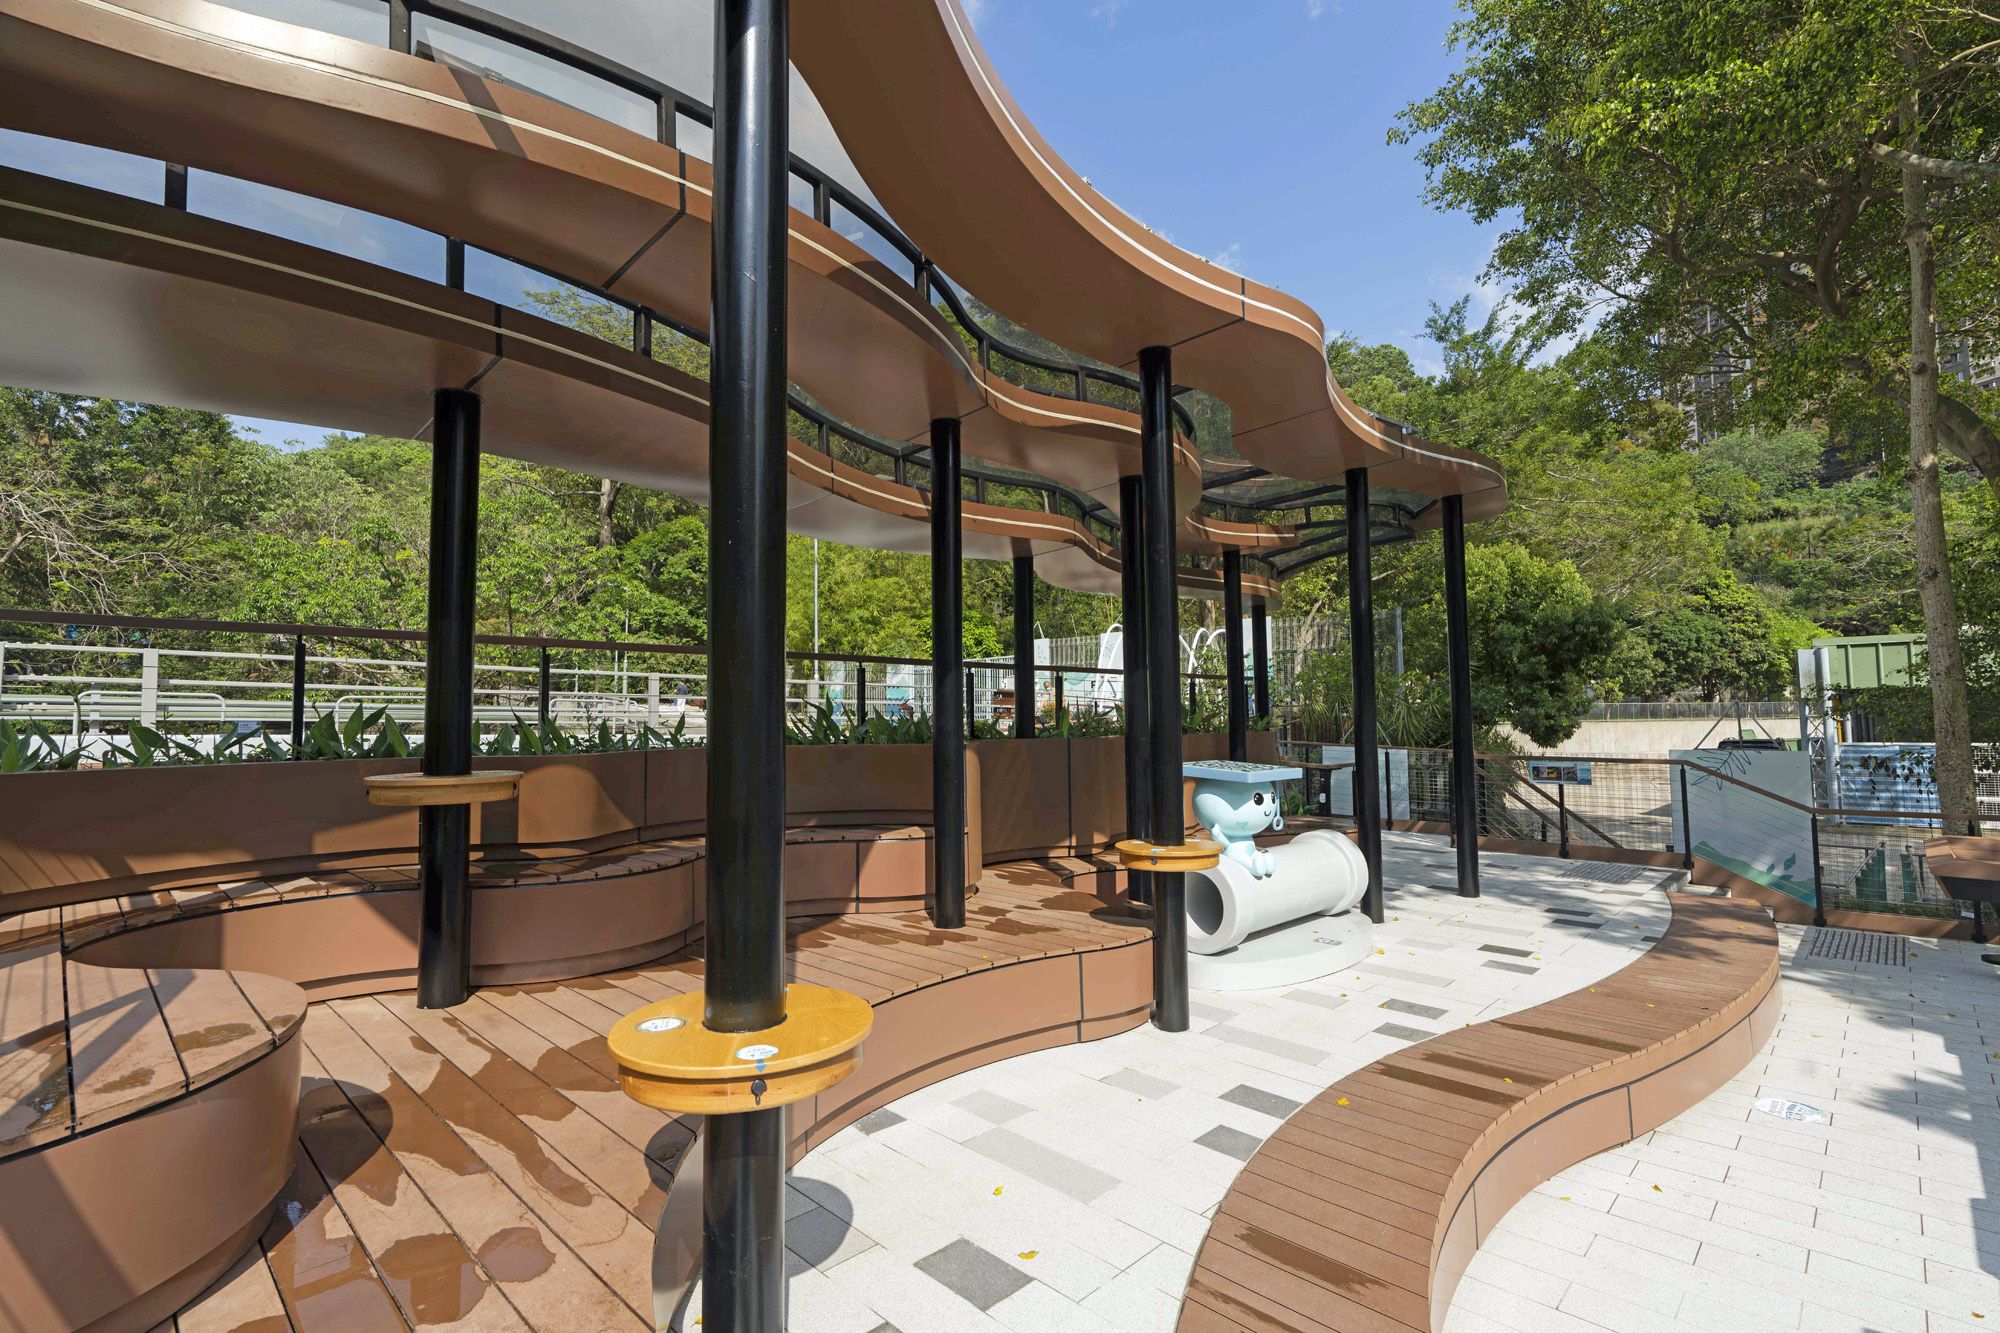 佐敦谷水道去年以「河畔城市」概念完成活化，展現綠化河道、增加公共休憩空間、帶動近水文化等多項設計元素，包括設置「綠化咖啡枱」、太陽能充電裝置等。